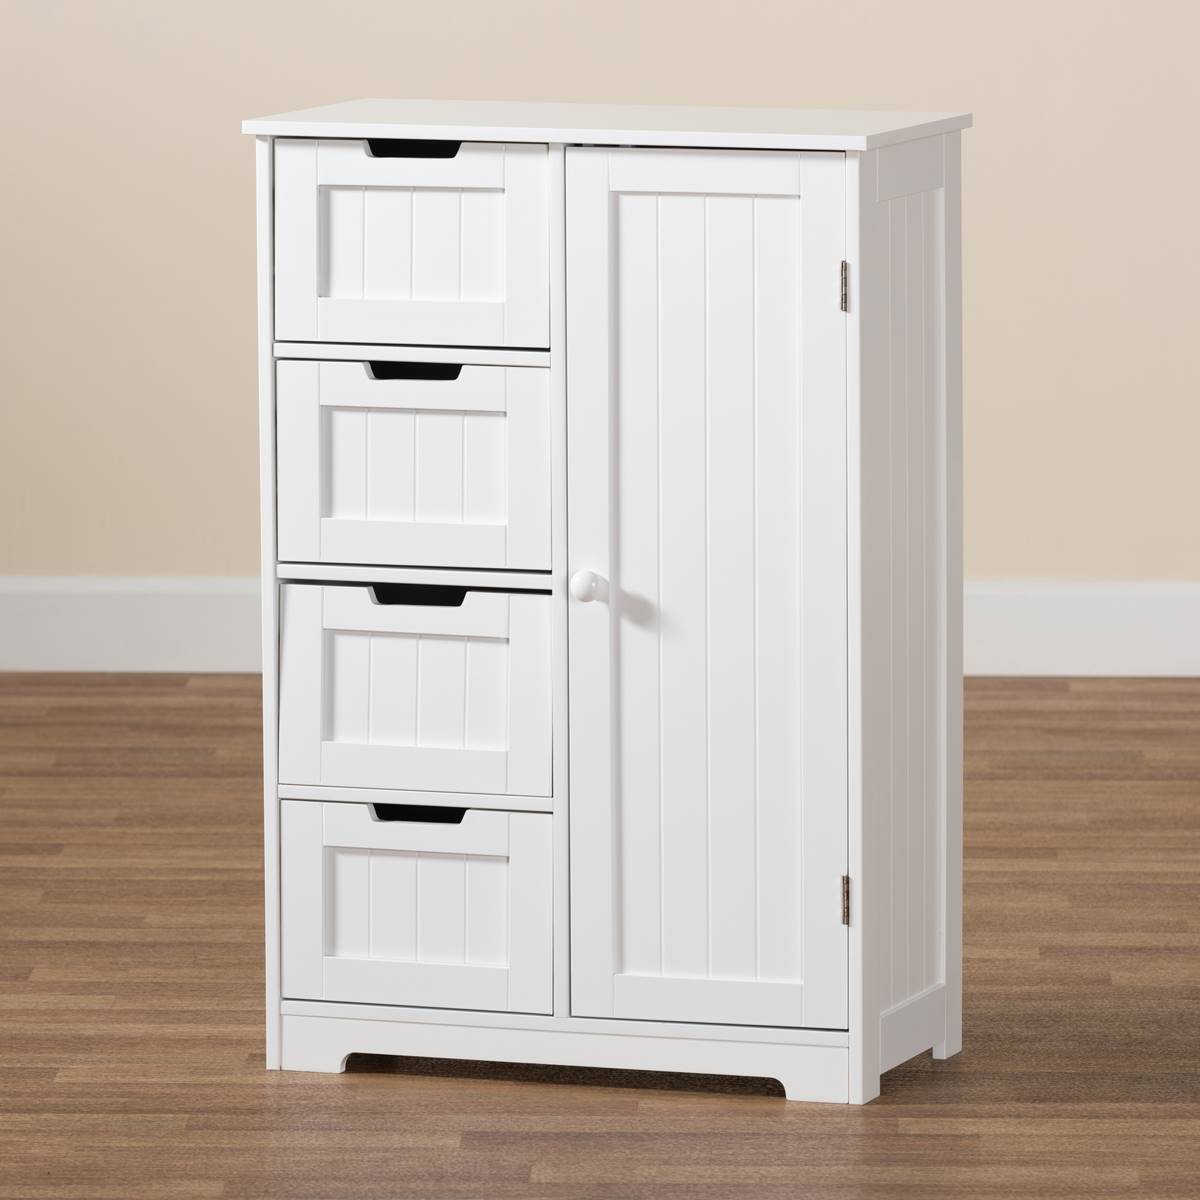 Baxton Studio Bauer White Wood 4-Drawer Bathroom Storage Cabinet